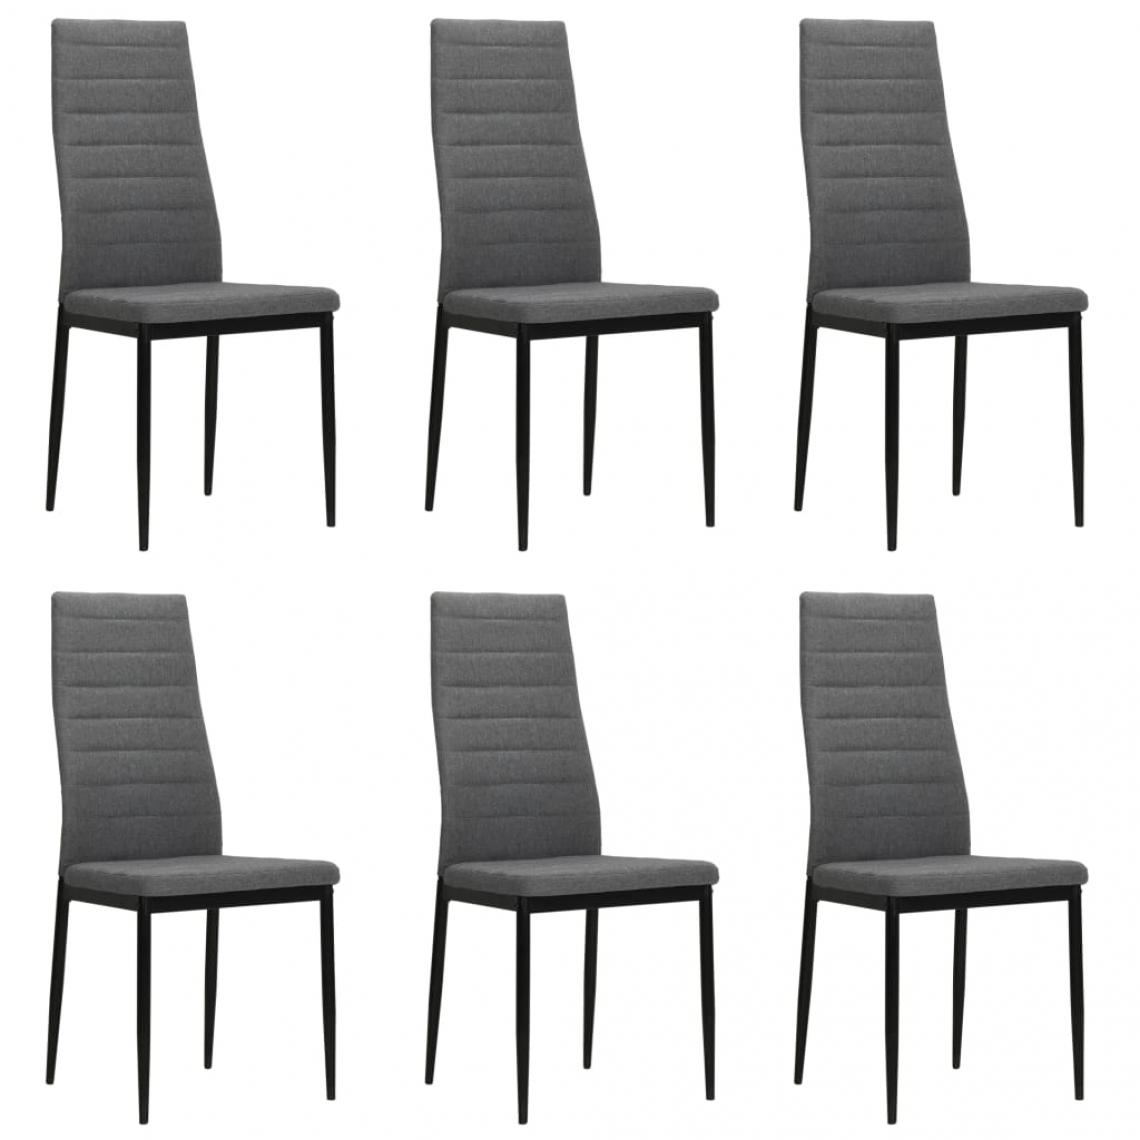 Decoshop26 - Lot de 6 chaises de salle à manger cuisine design contemporain tissu gris clair CDS022406 - Chaises